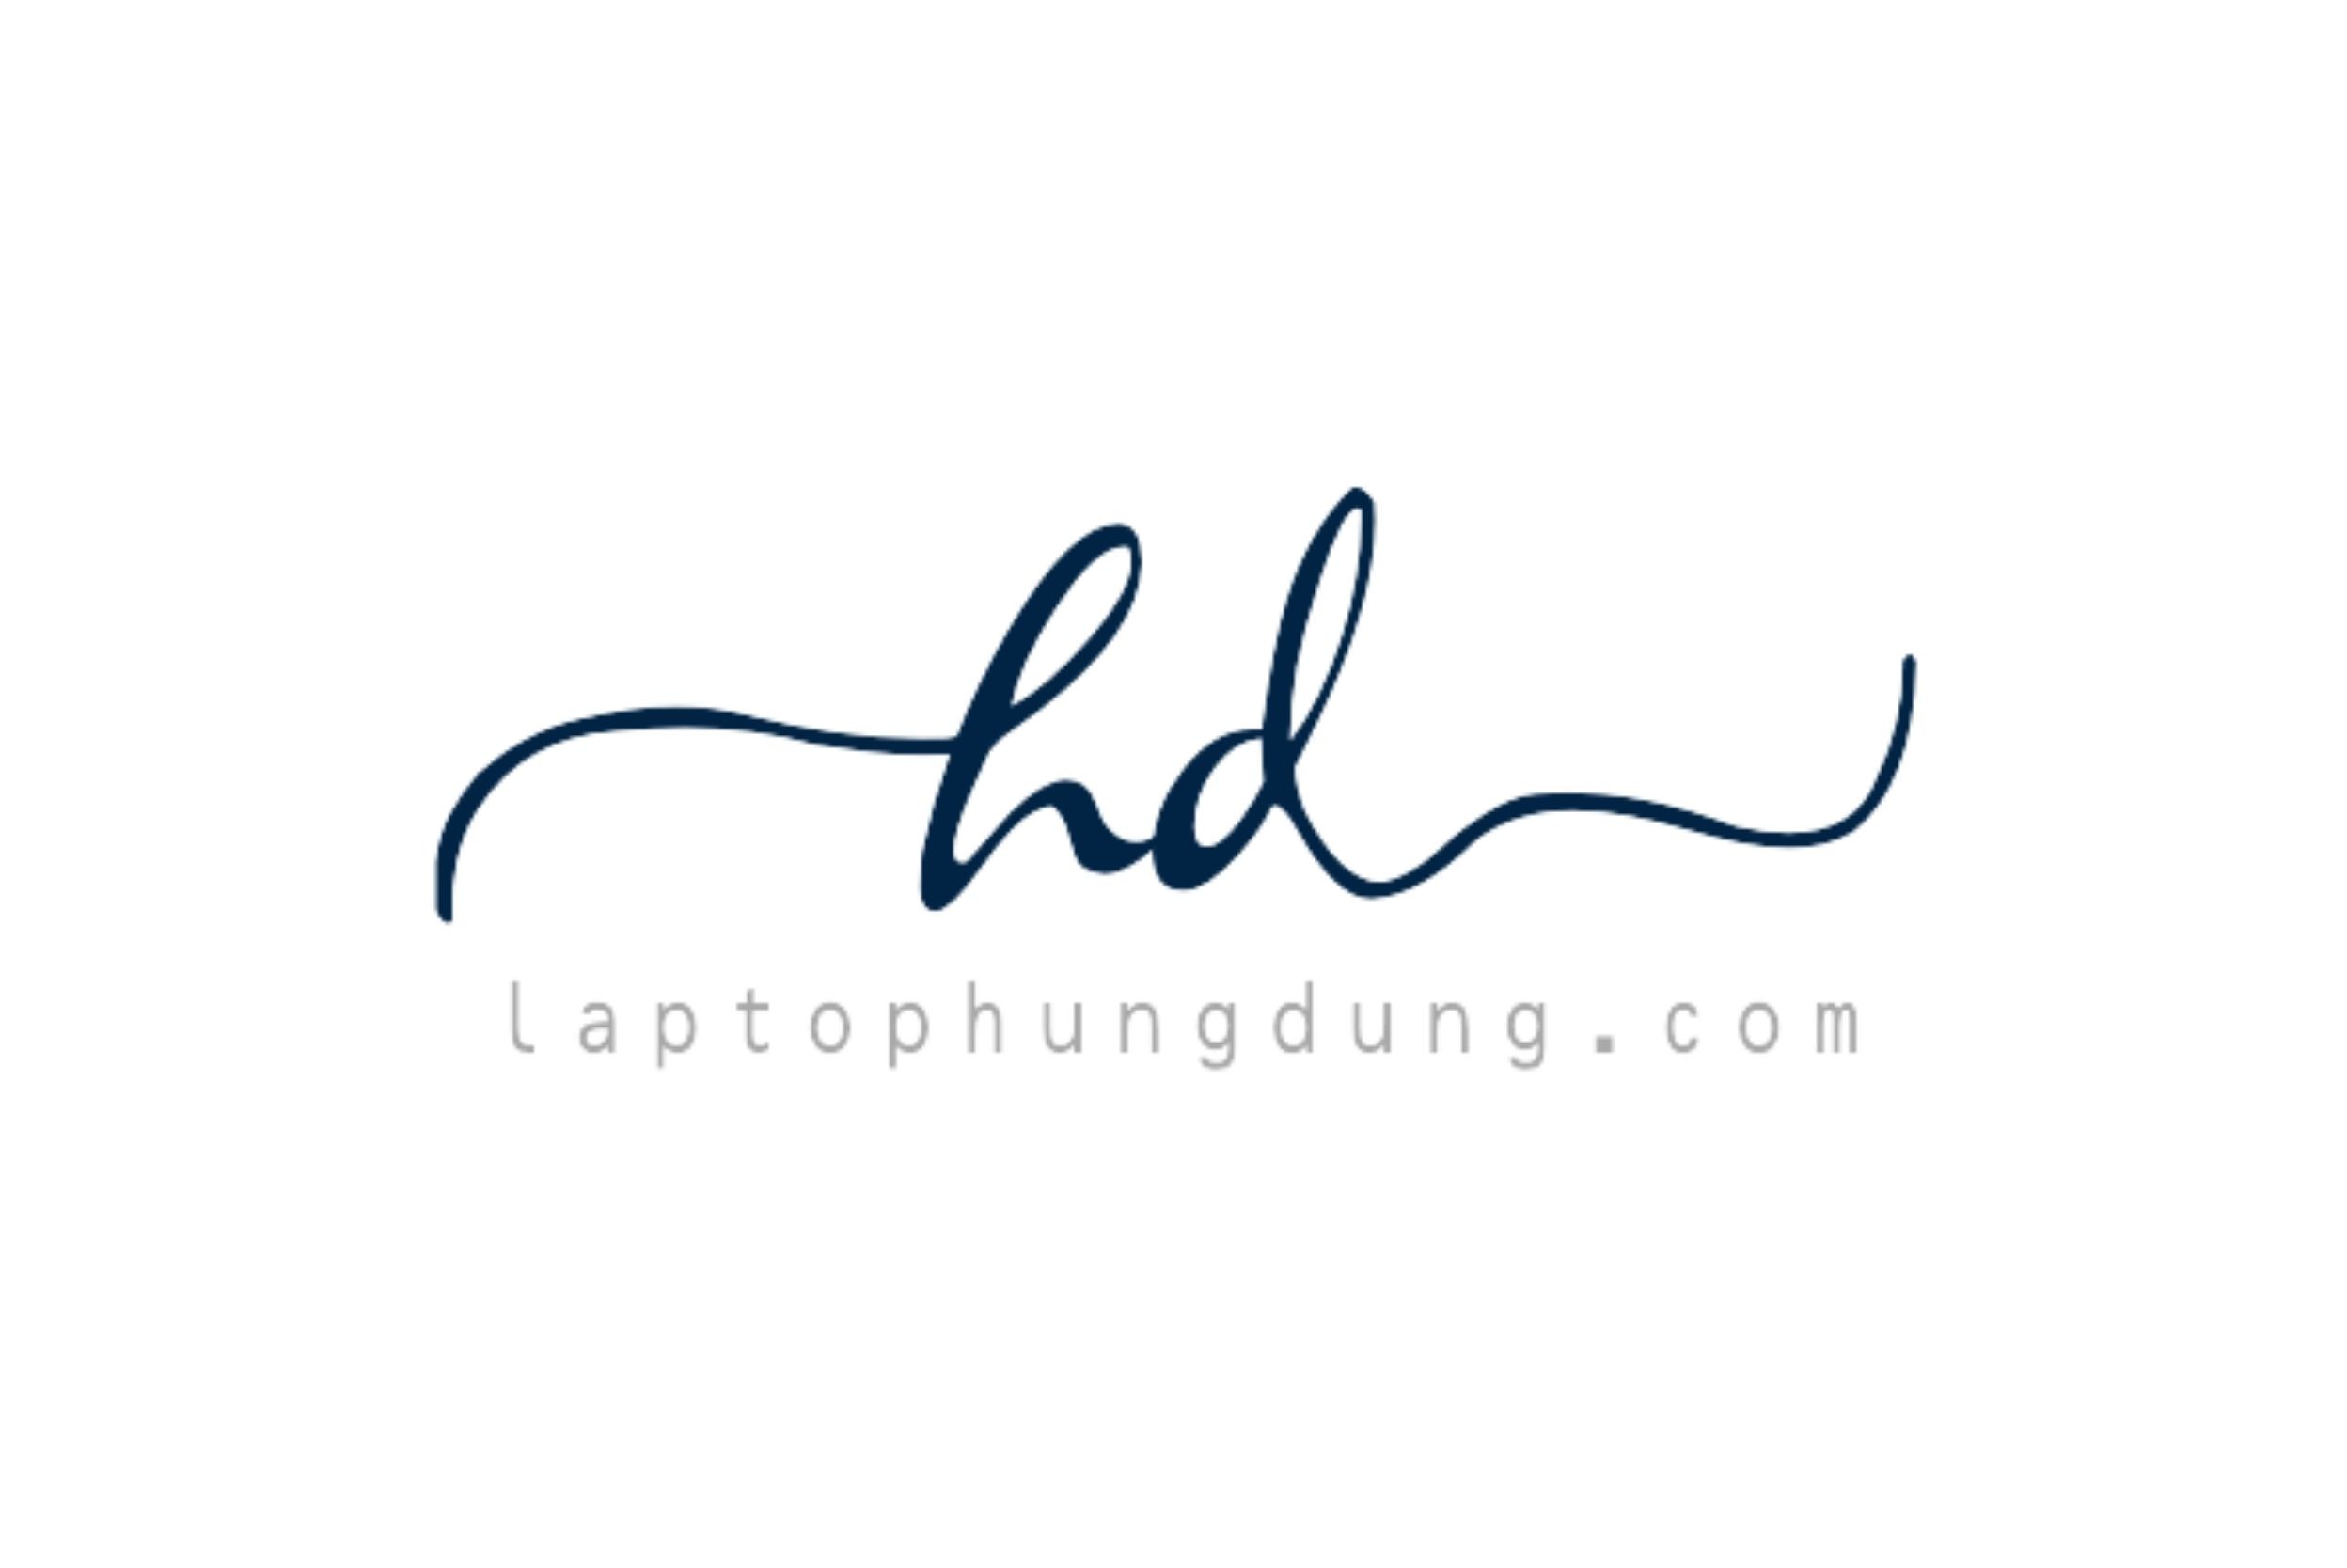 laptop-hung-dung-logo